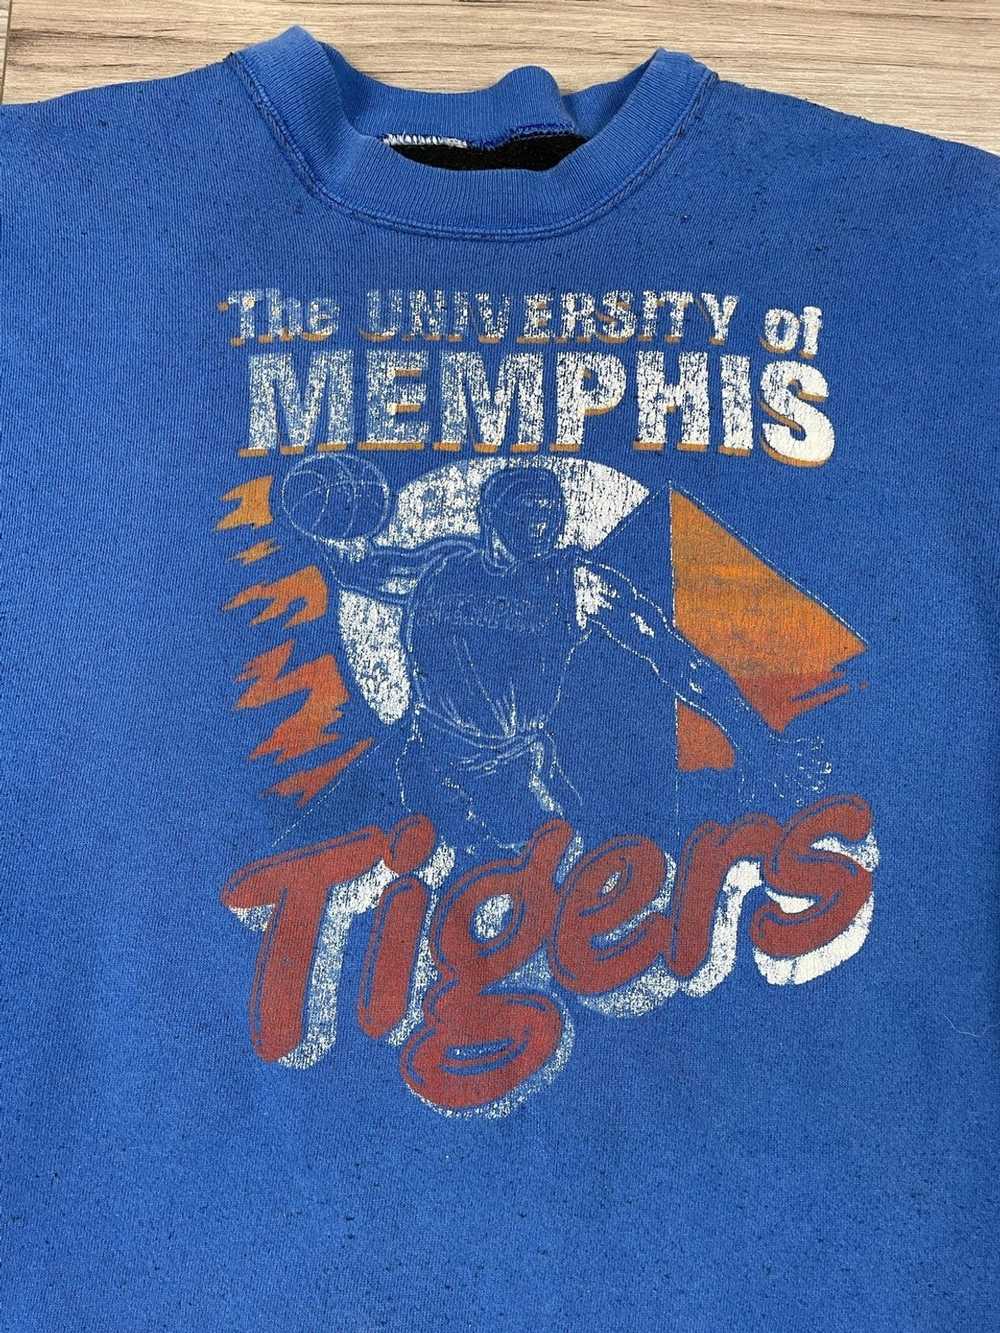 Vintage University Memphis Tigers Starter Jacket Puffer Zip 90s